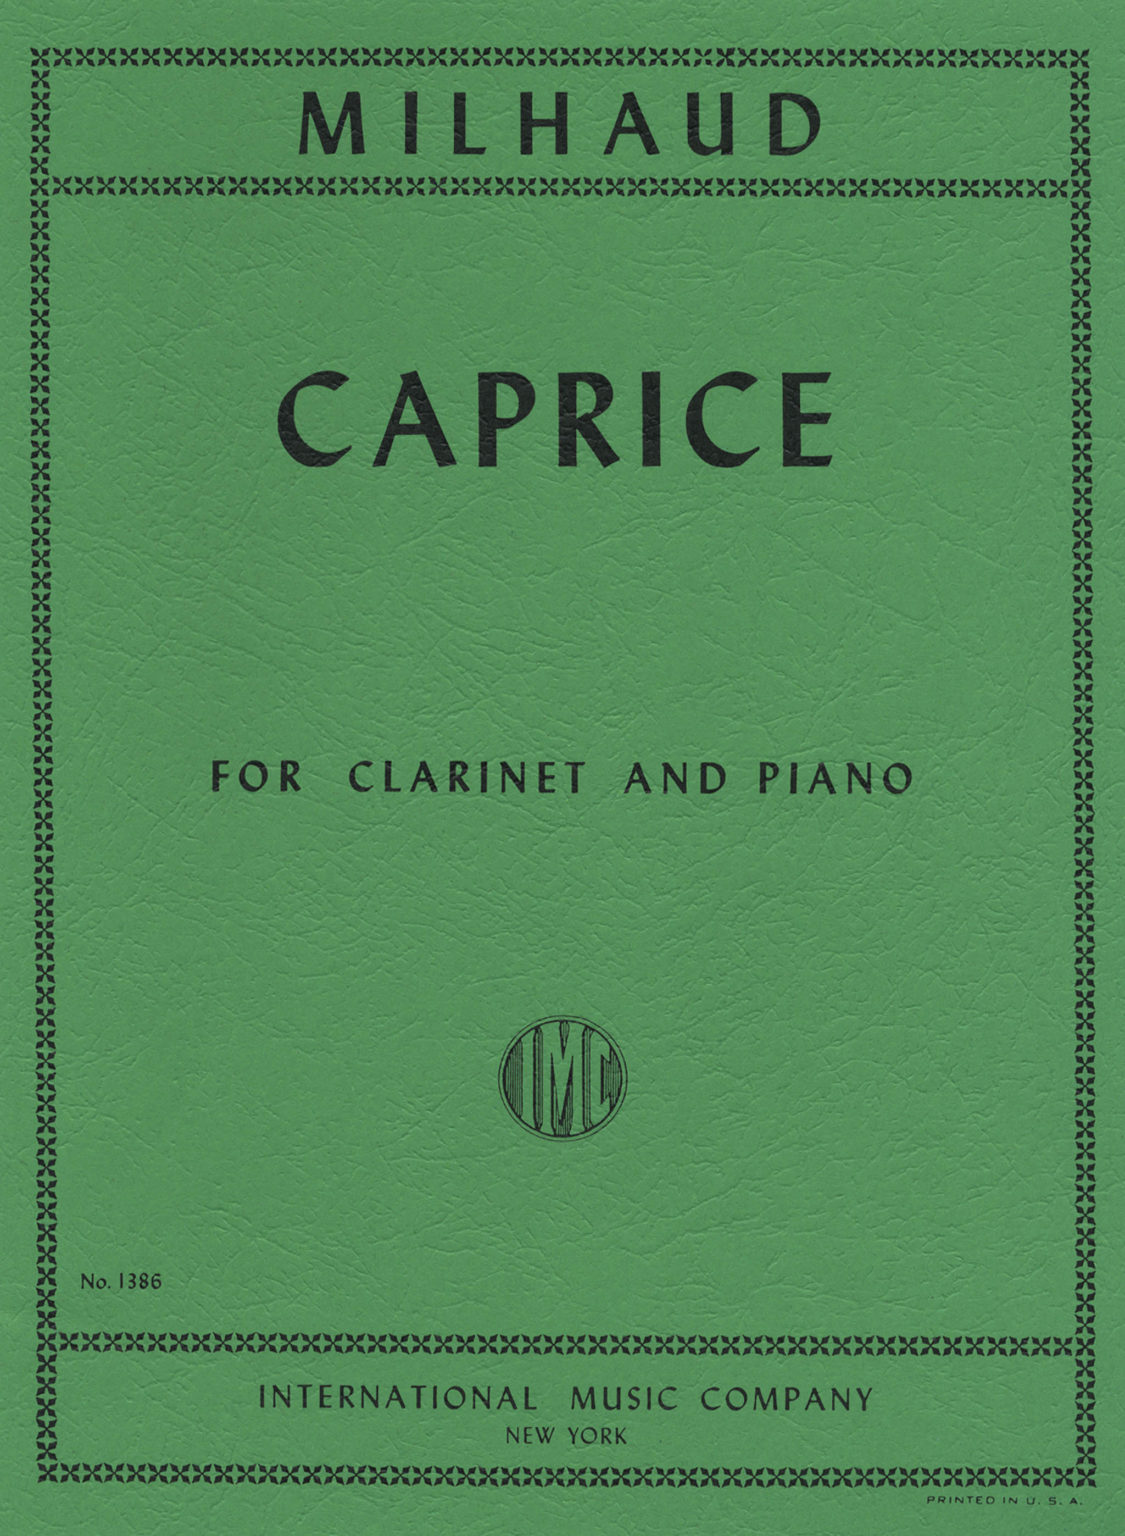 Caprice para clarinete y piano. Darius Milhaud